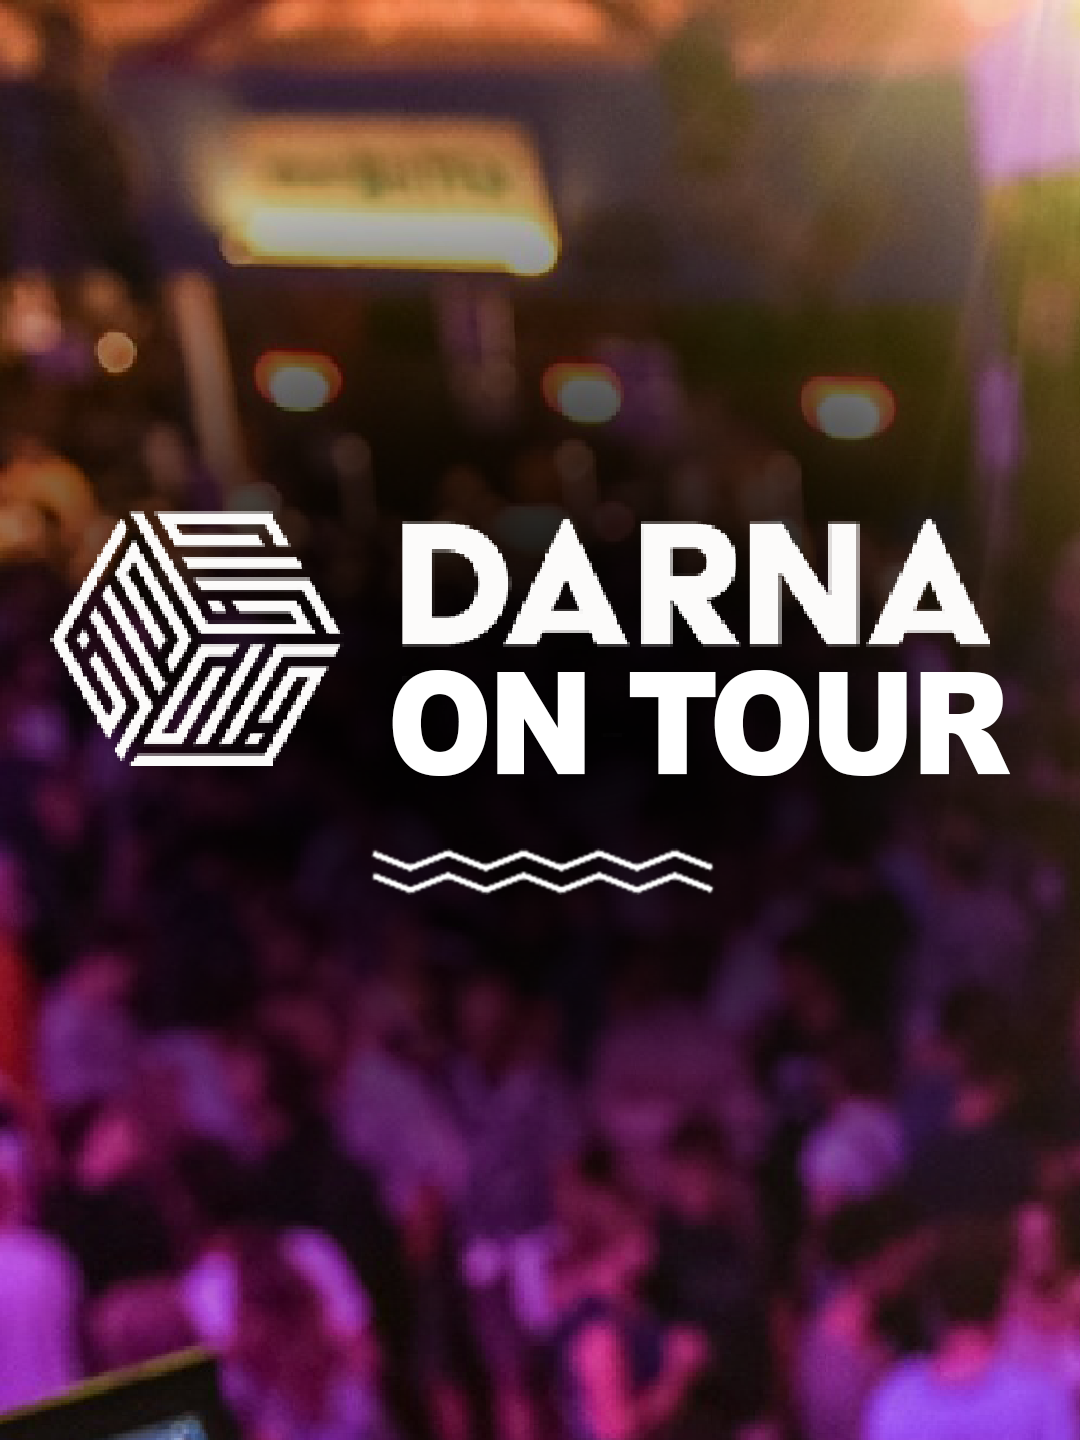 Darna on tour